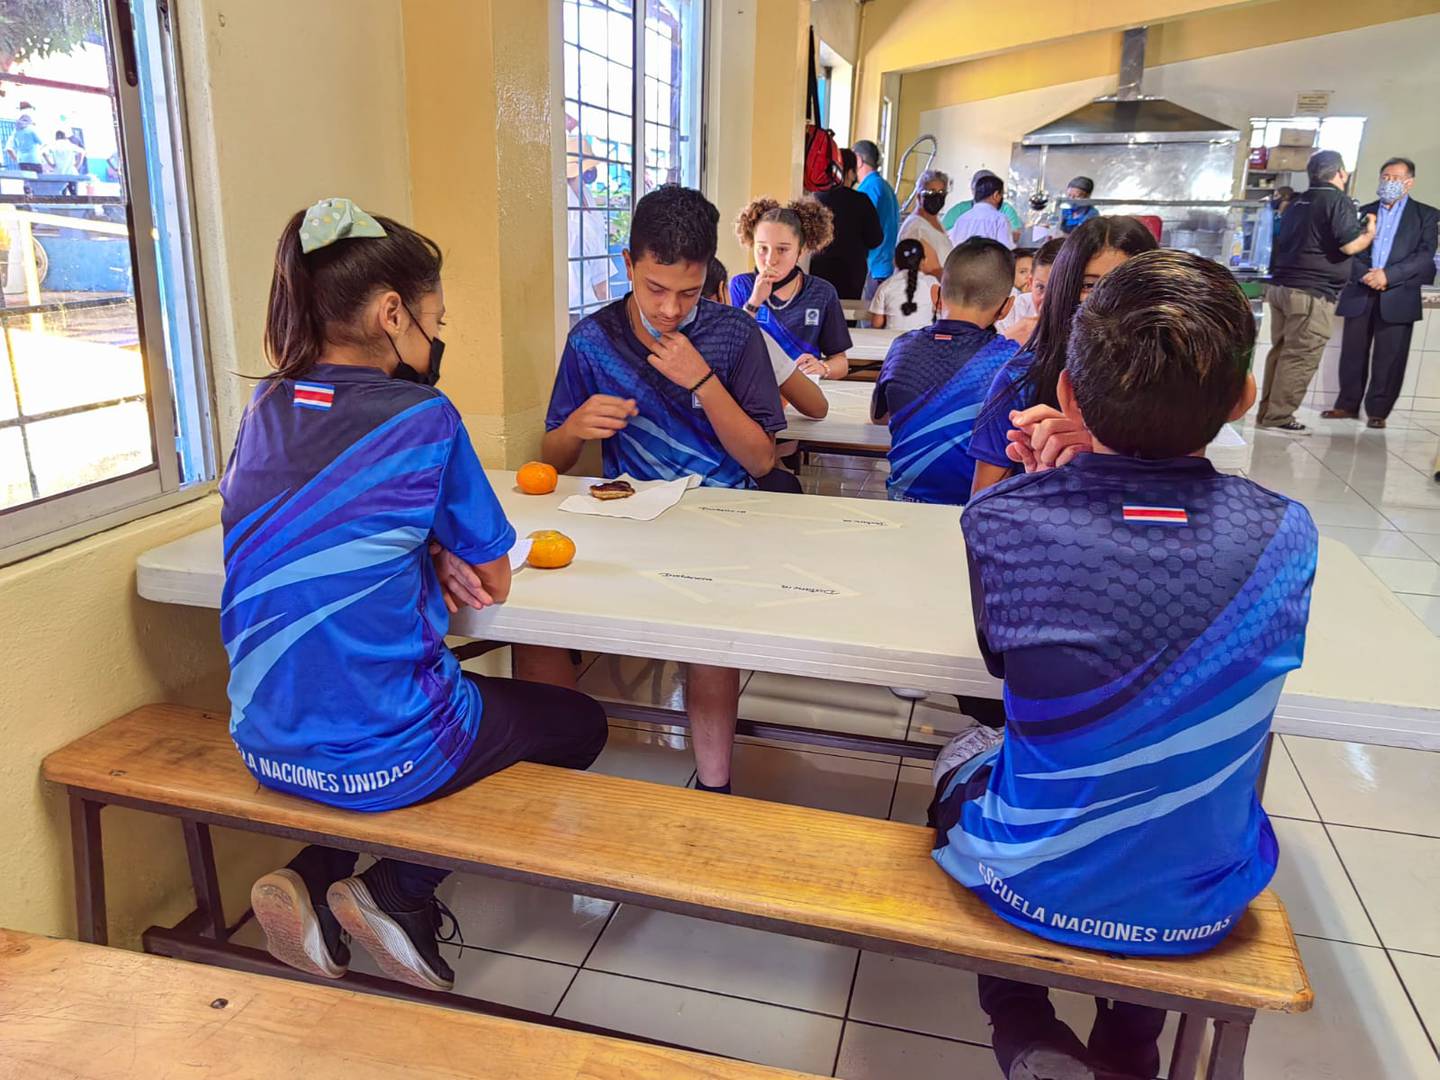 El lunes 22 de febrero del 2022, en la Escuela Naciones Unidas del barrio del mismo nombre en San José, el comedor escolar funcionaba puras tejas para una población de 468 estudiantes.